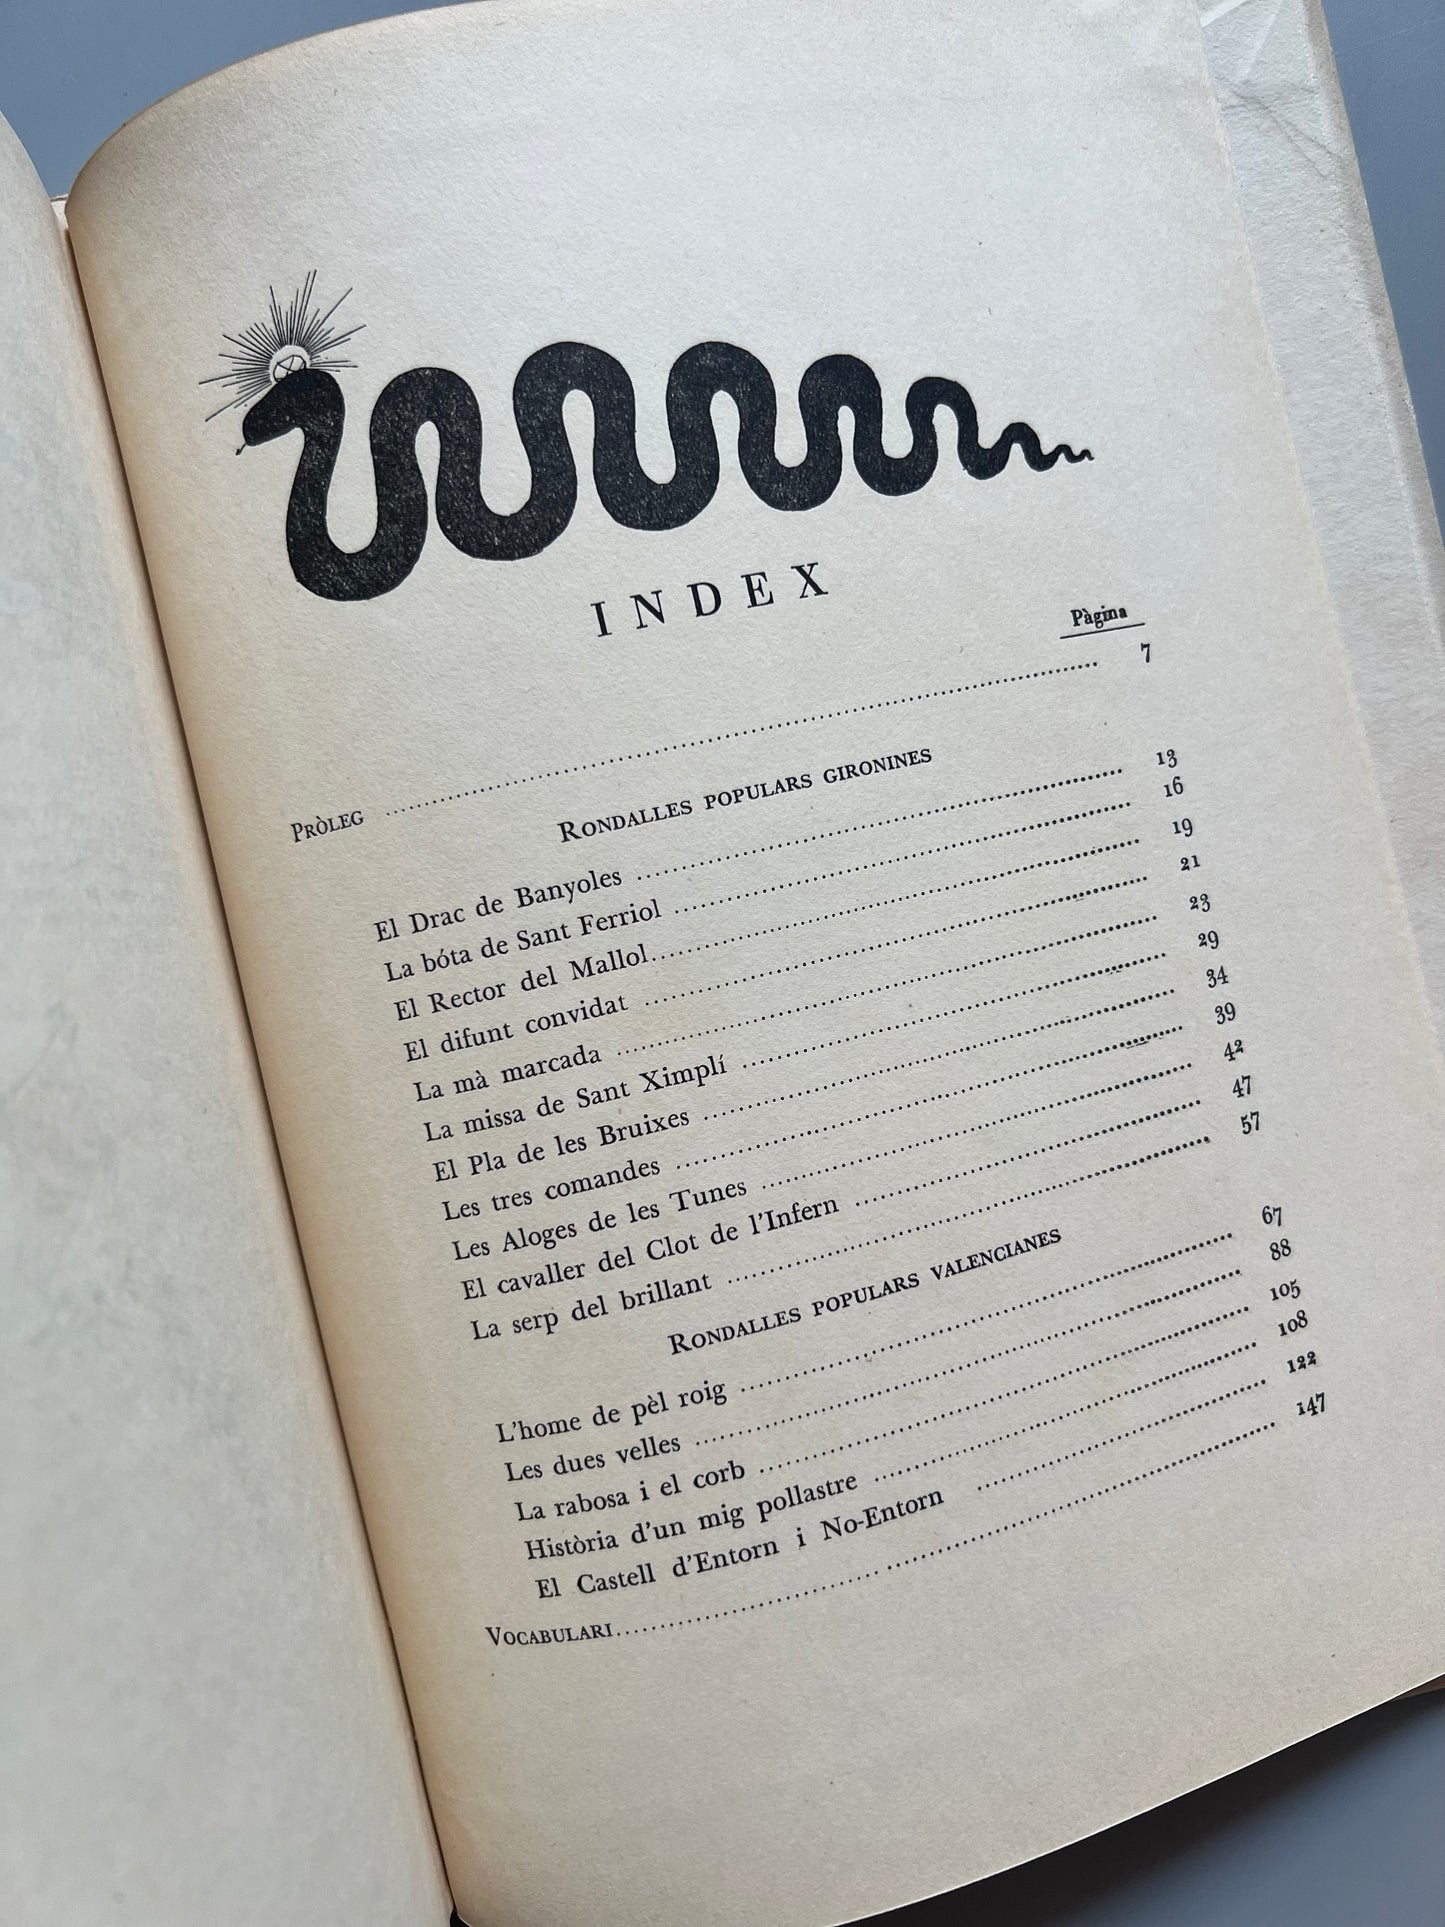 Rondalles gironines i valencianes - Edicions Ariel, 1951